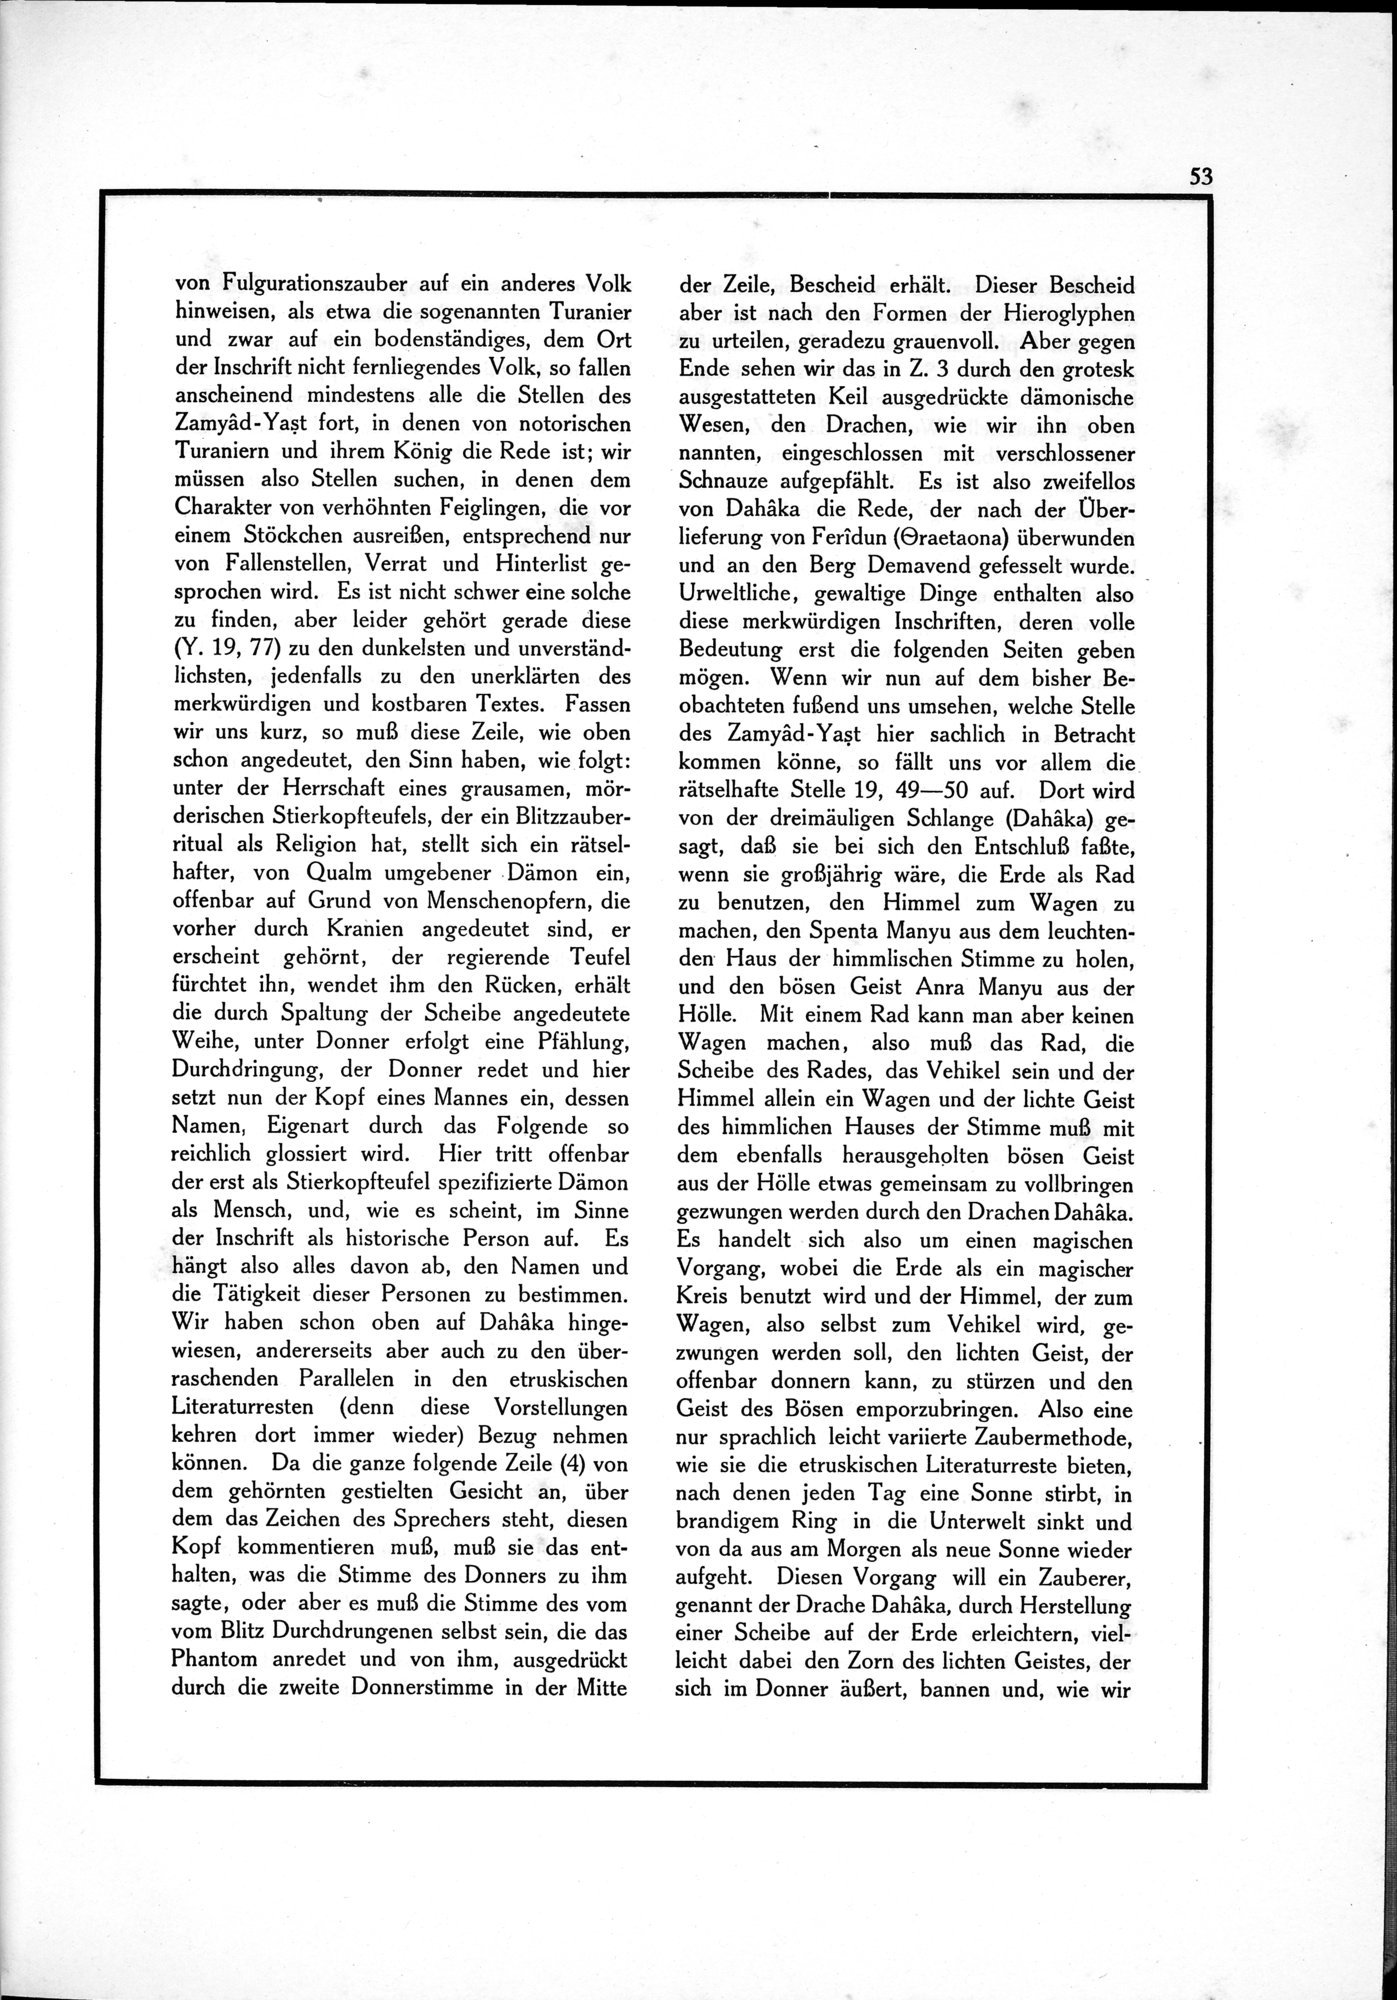 Die Teufel des Avesta und Ihre Beziehungen zur Ikonographie des Buddhismus Zentral-Asiens : vol.1 / Page 57 (Grayscale High Resolution Image)